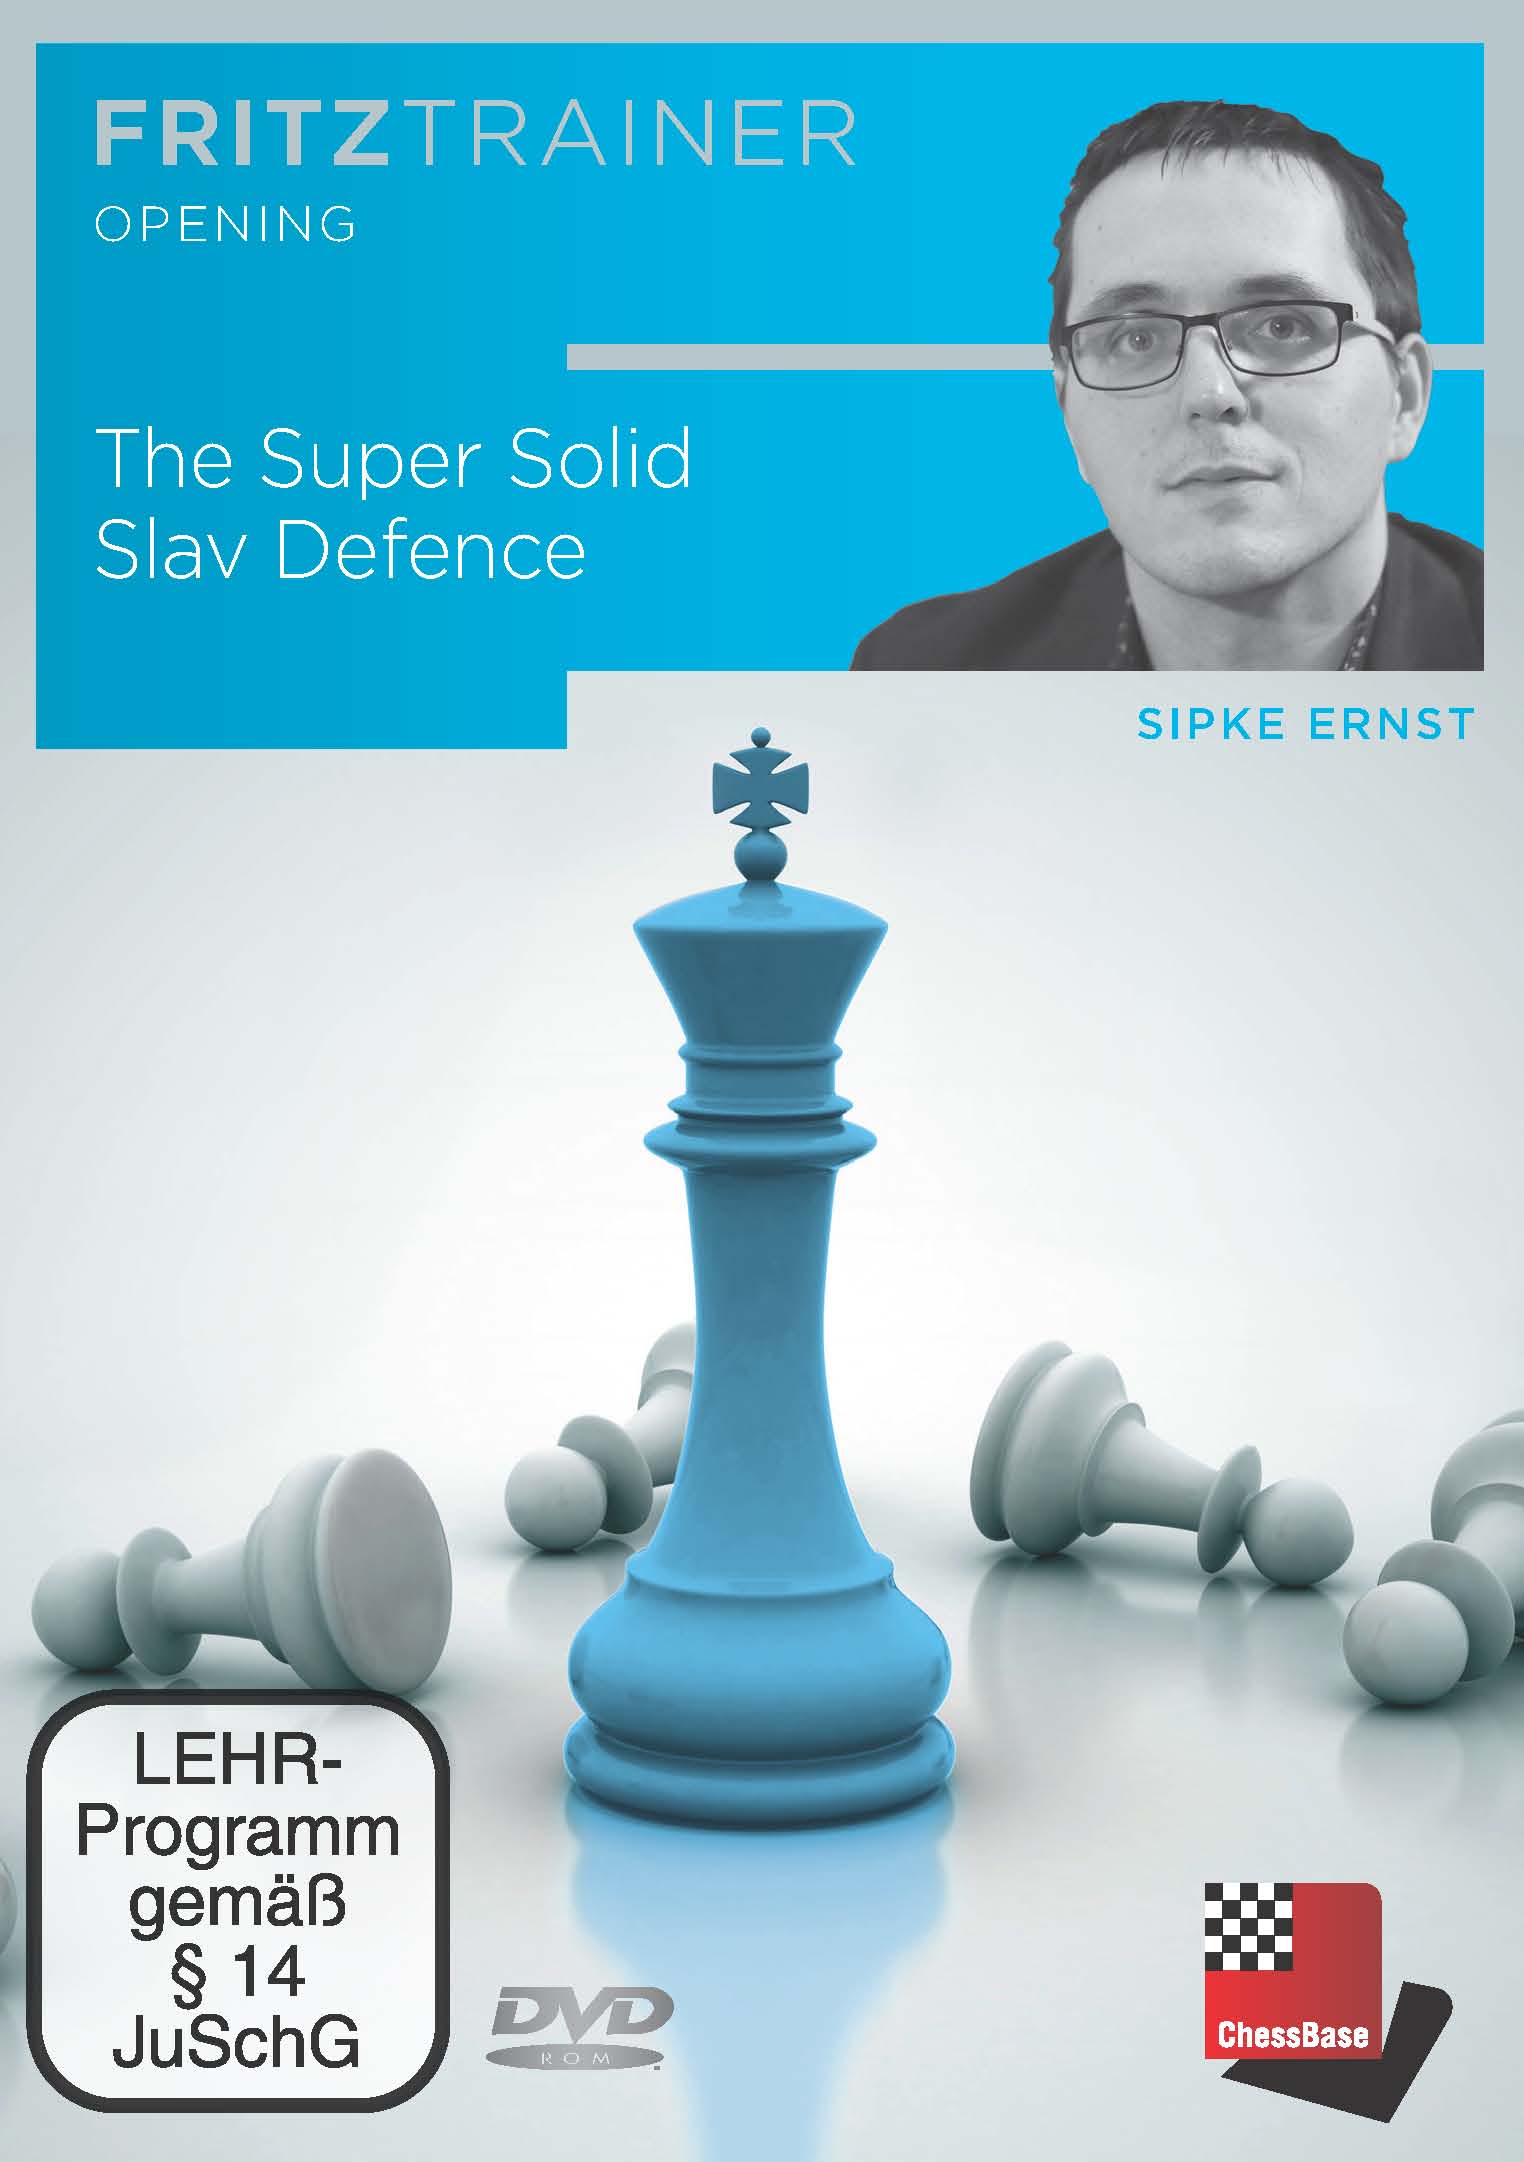 Sipke: The Super Solid Slav Defence